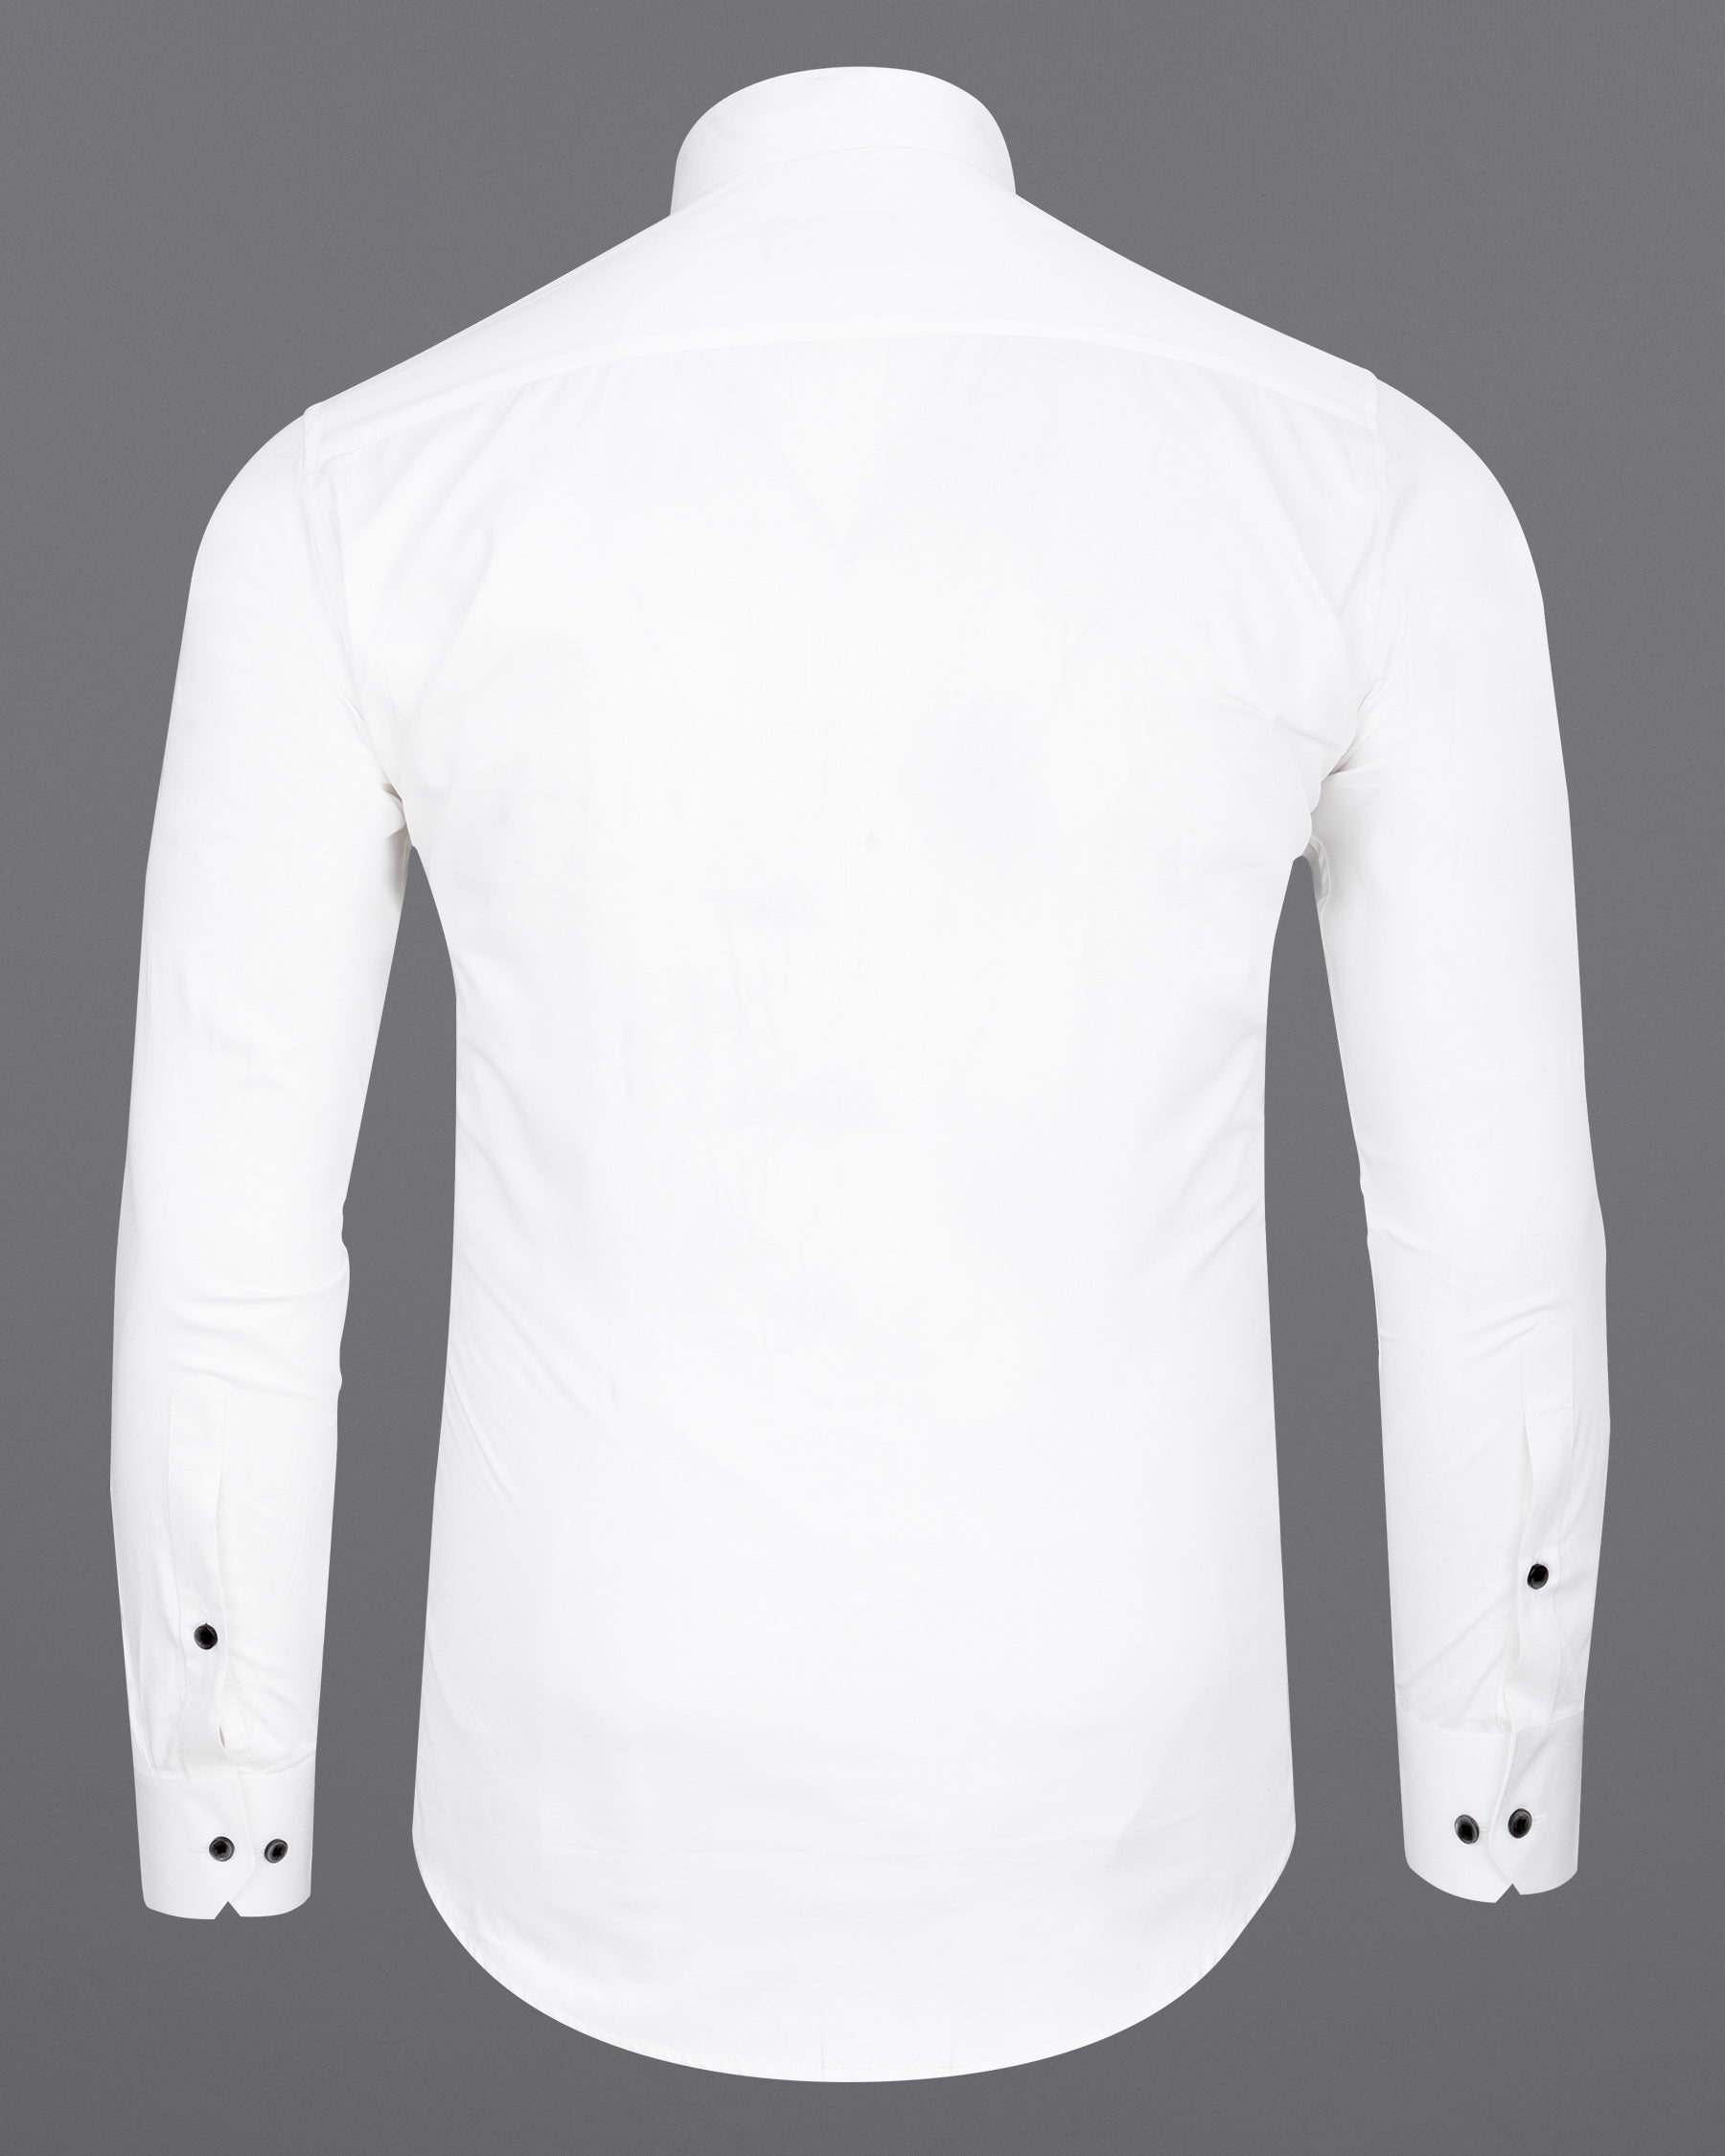 Bright White Subtle Sheen with Black Super Soft Premium Cotton Designer Shirt 6822-BLK-P304-38, 6822-BLK-P304-H-38, 6822-BLK-P304-39, 6822-BLK-P304-H-39, 6822-BLK-P304-40, 6822-BLK-P304-H-40, 6822-BLK-P304-42, 6822-BLK-P304-H-42, 6822-BLK-P304-44, 6822-BLK-P304-H-44, 6822-BLK-P304-46, 6822-BLK-P304-H-46, 6822-BLK-P304-48, 6822-BLK-P304-H-48, 6822-BLK-P304-50, 6822-BLK-P304-H-50, 6822-BLK-P304-52, 6822-BLK-P304-H-52